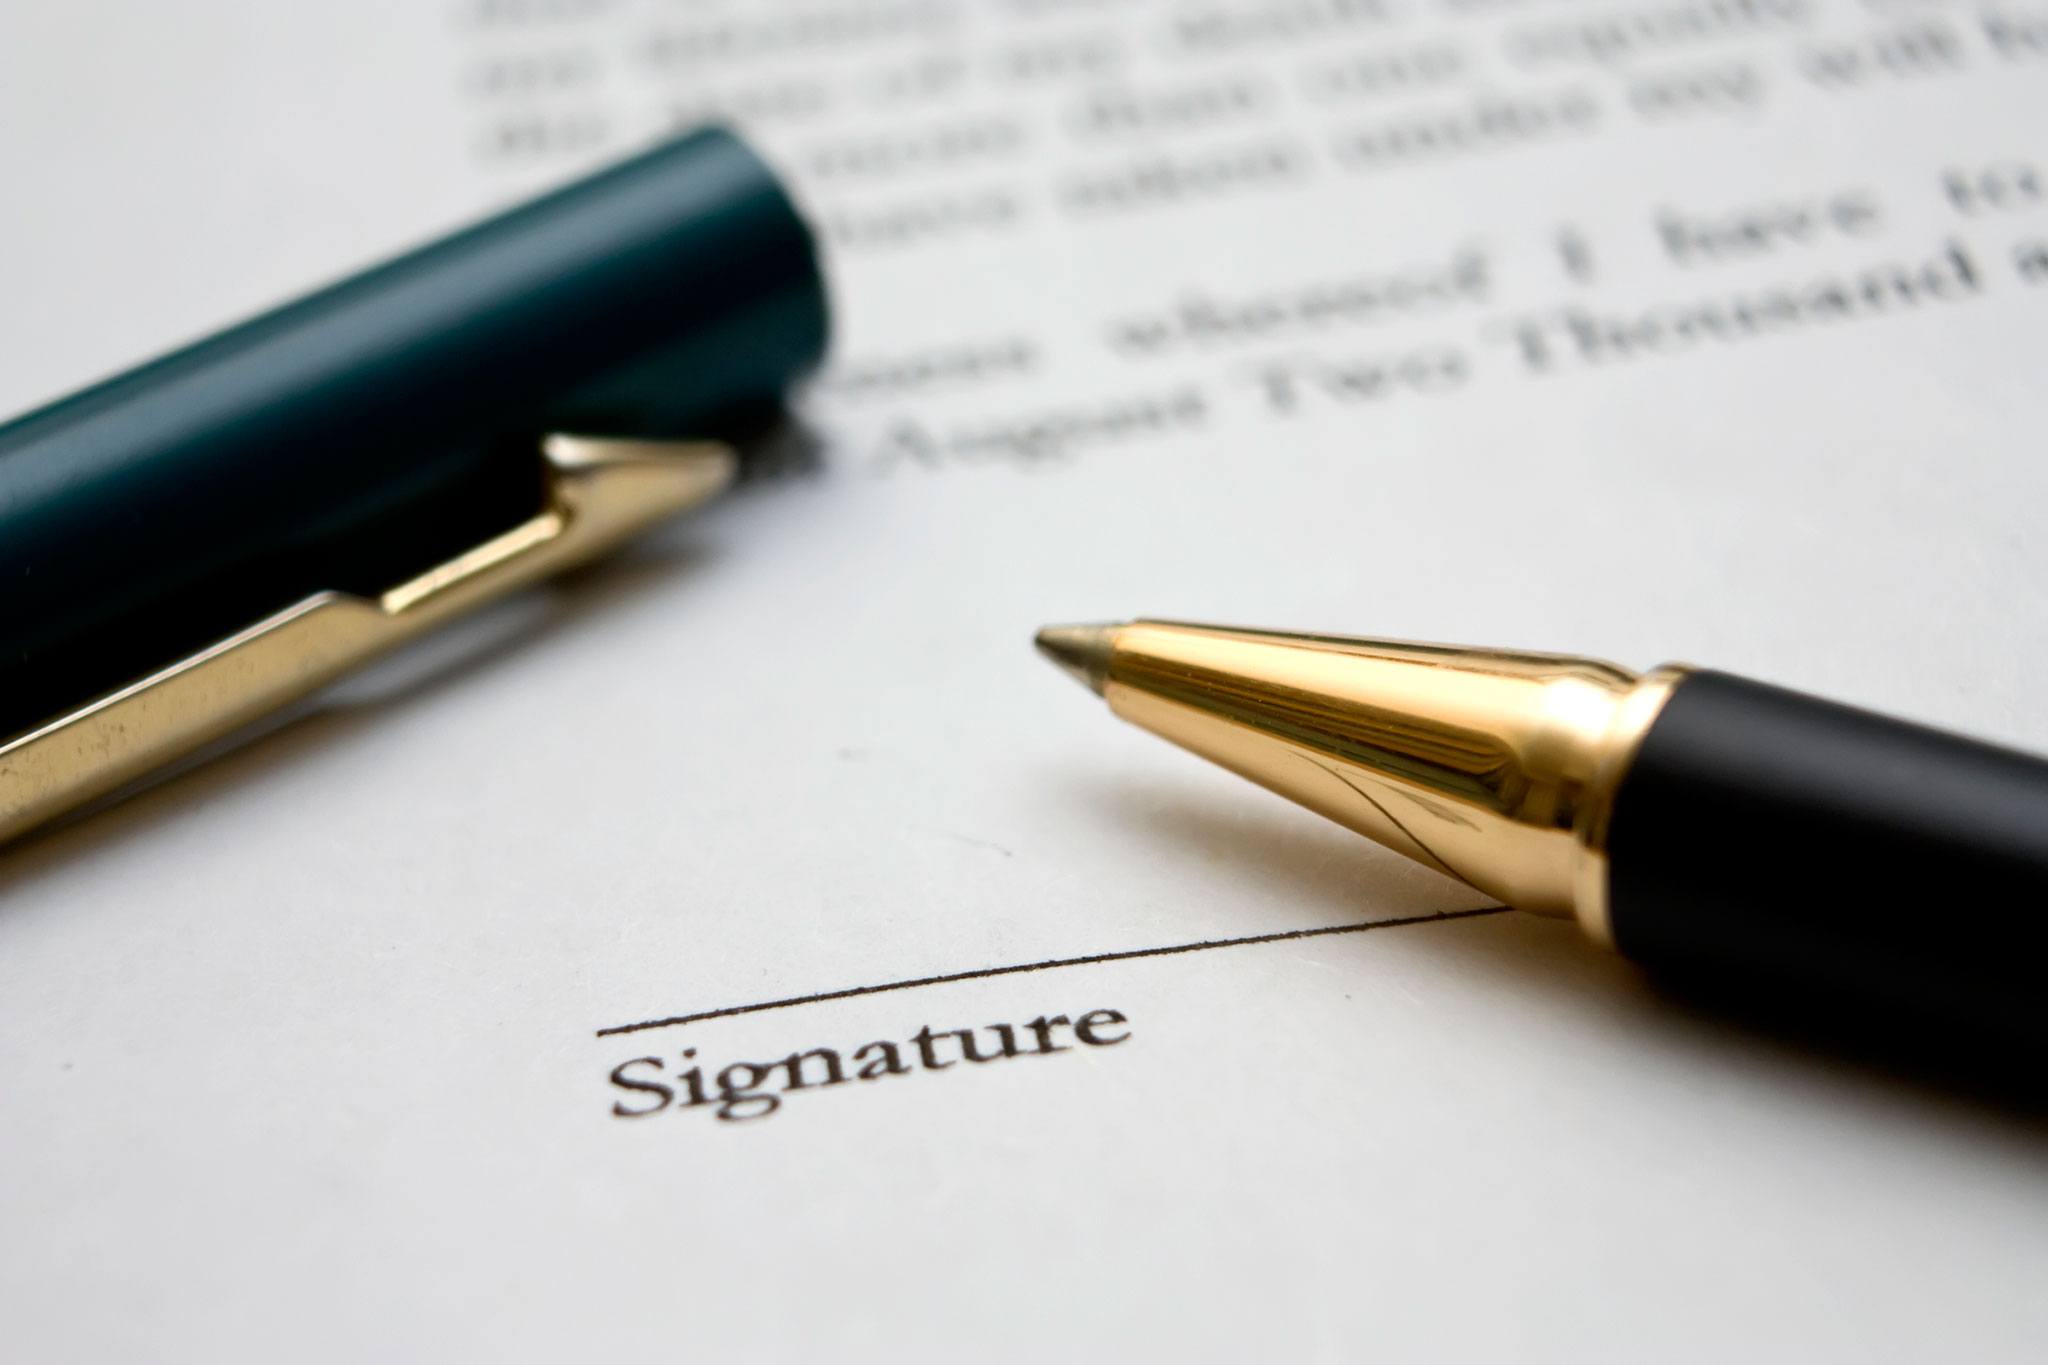 signing paperwork